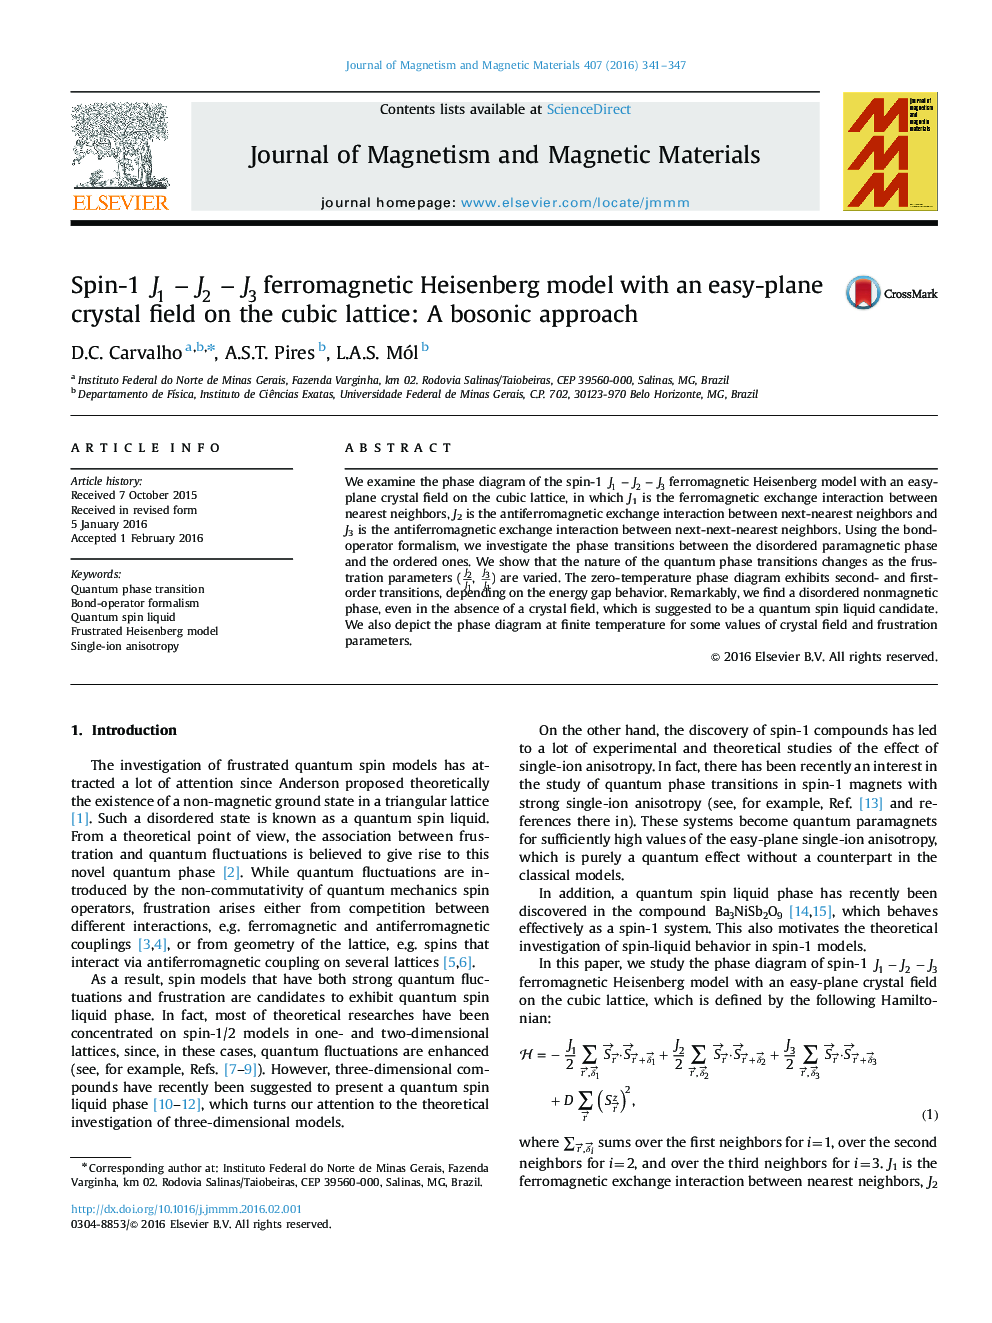 Spin-1 J1âJ2âJ3 ferromagnetic Heisenberg model with an easy-plane crystal field on the cubic lattice: A bosonic approach